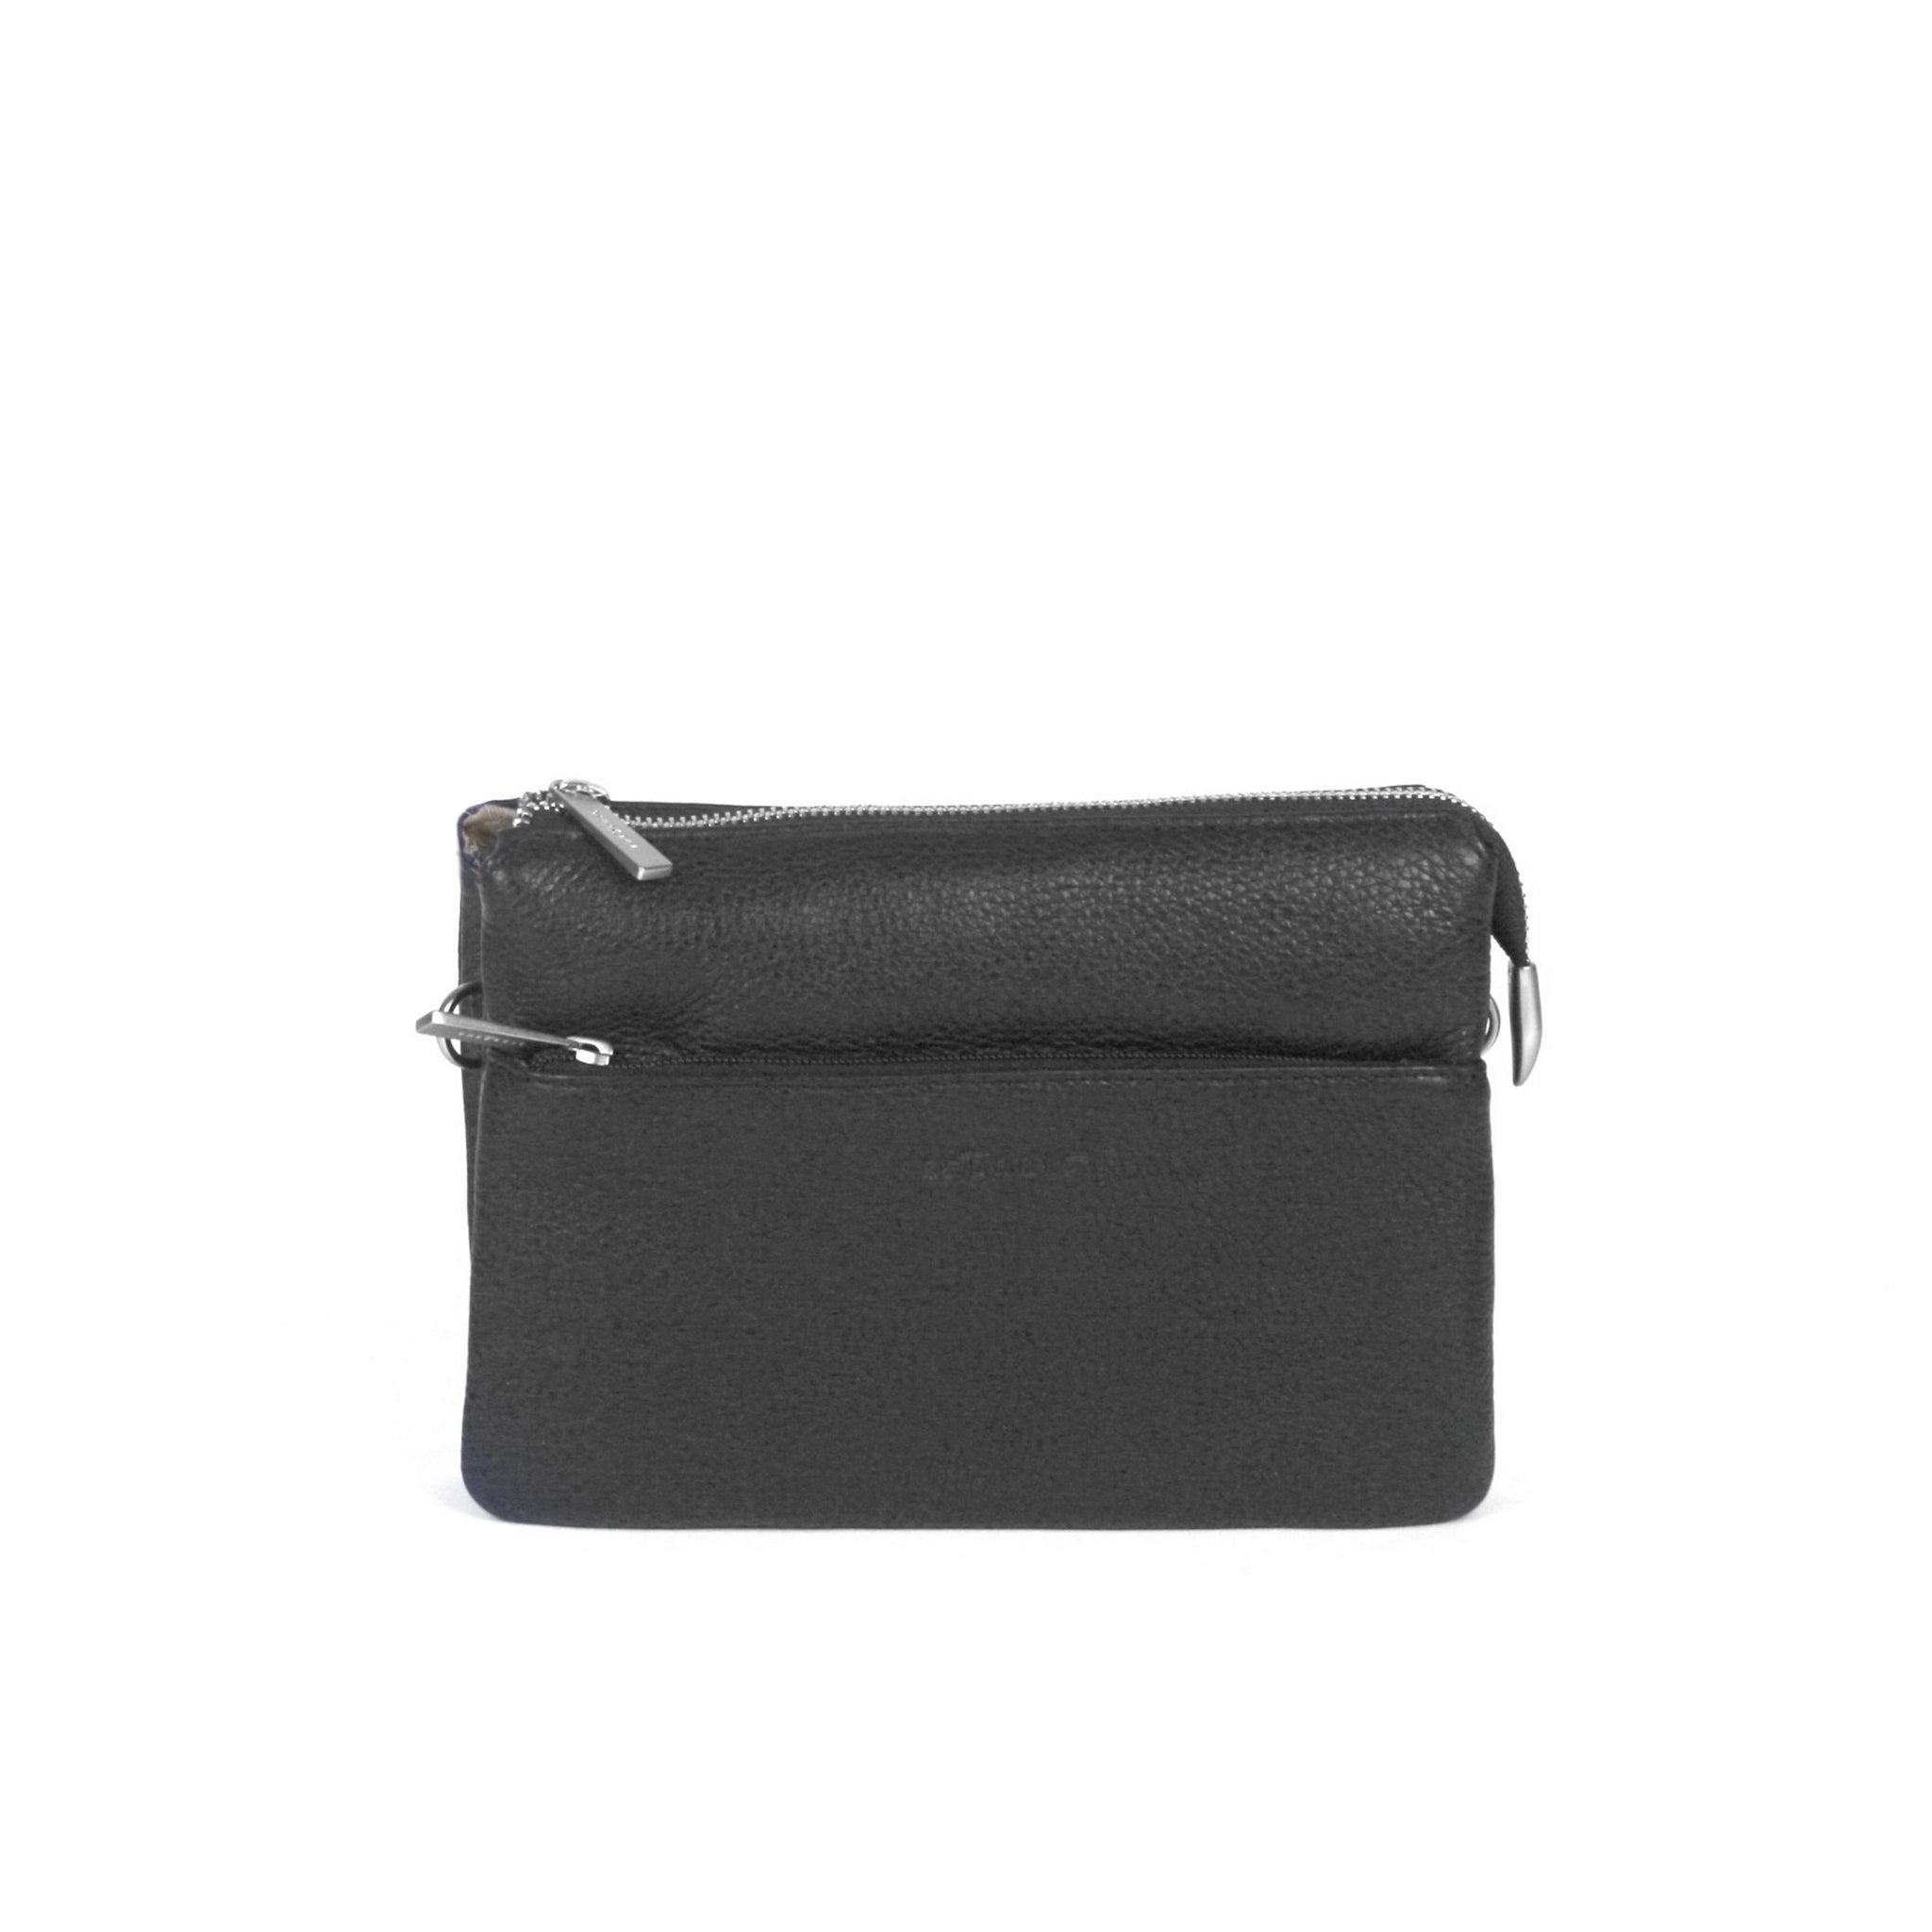 Ashro Woven Handbag Purse Multi Compartment - $30 - From Lori